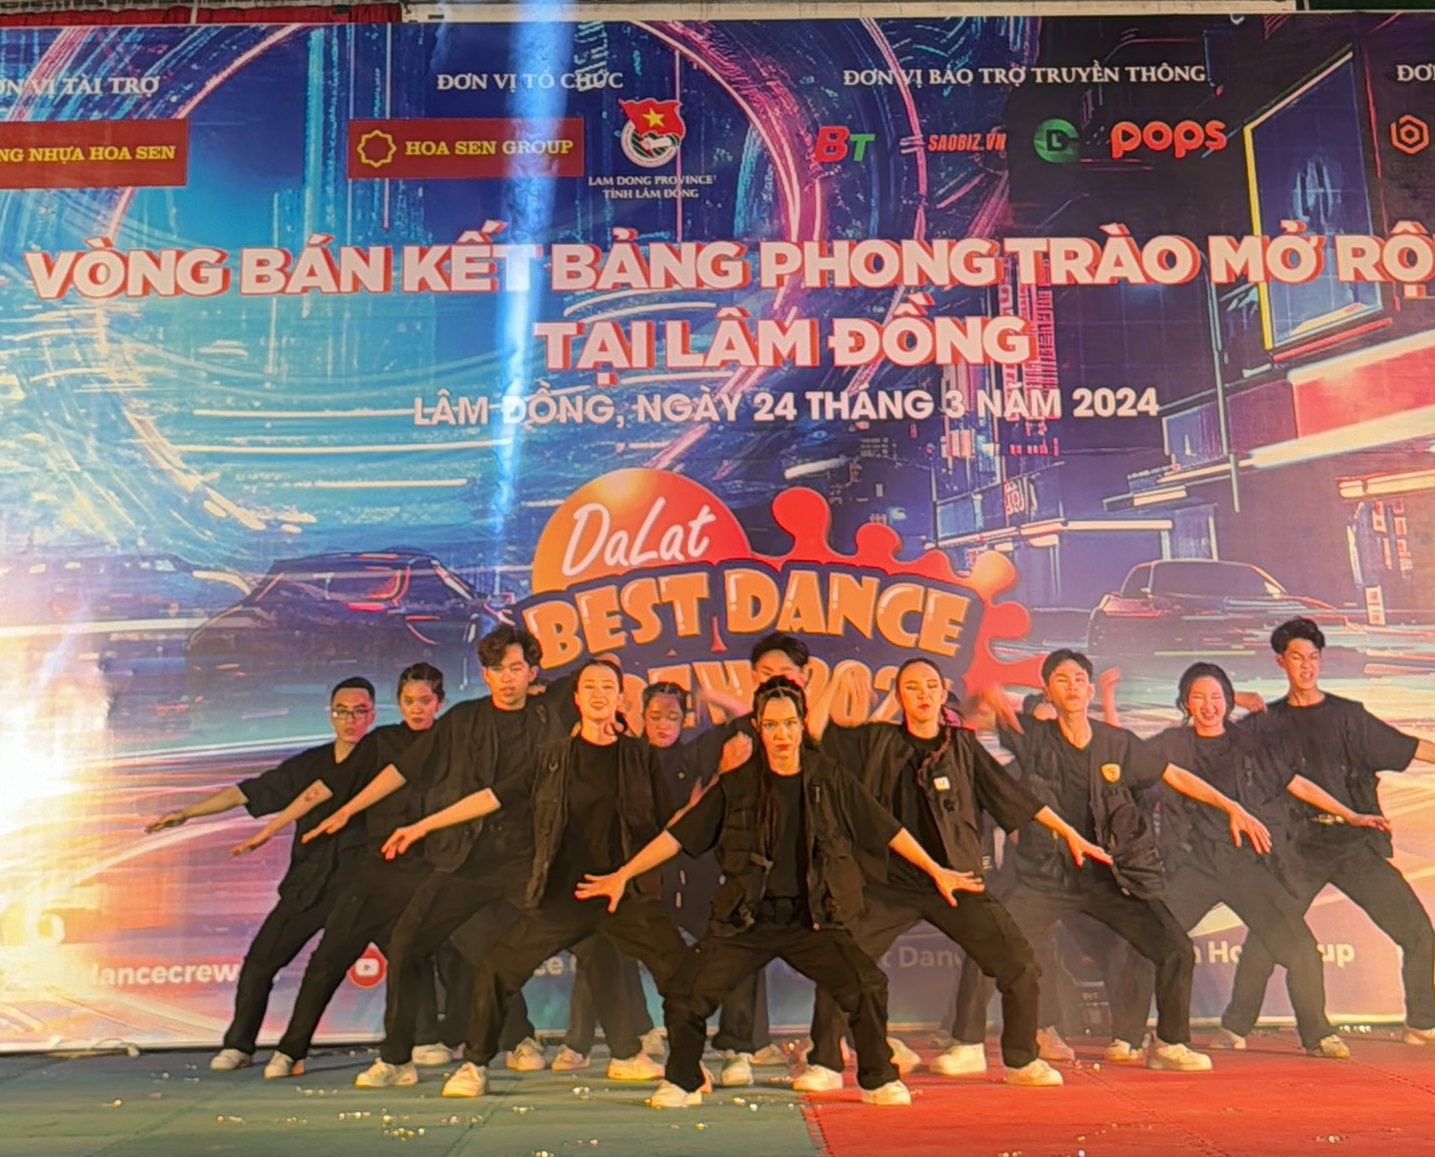 Lộ diện 14 nhóm nhảy lọt vào chung kết Dalat Best Dance Crew 2024 – Hoa Sen Home International Cup